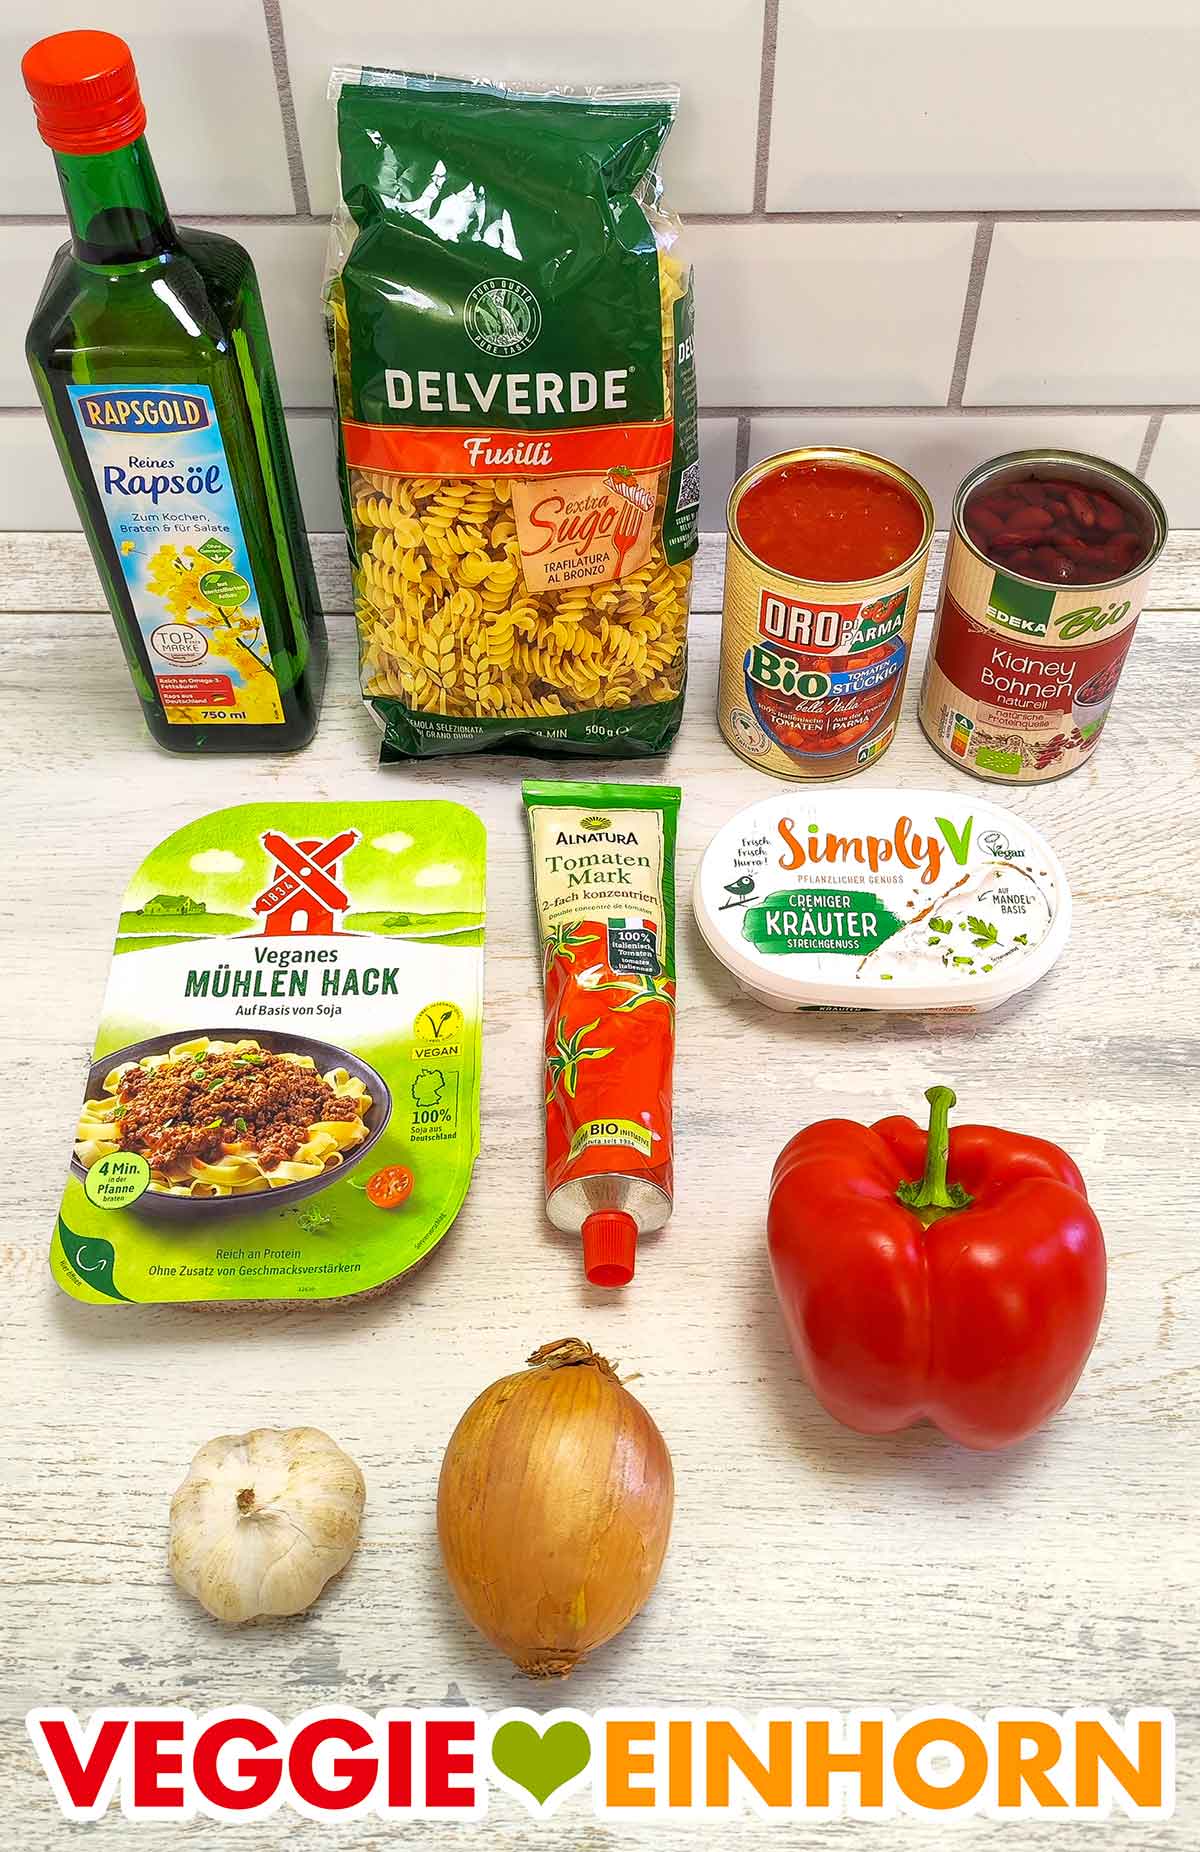 Öl, Nudeln, Tomatenstücke, Kidneybohnen, veganes Hack, Tomatenmark, veganer Kräuterfrischkäse, rote Paprika, Knoblauch, Zwiebel